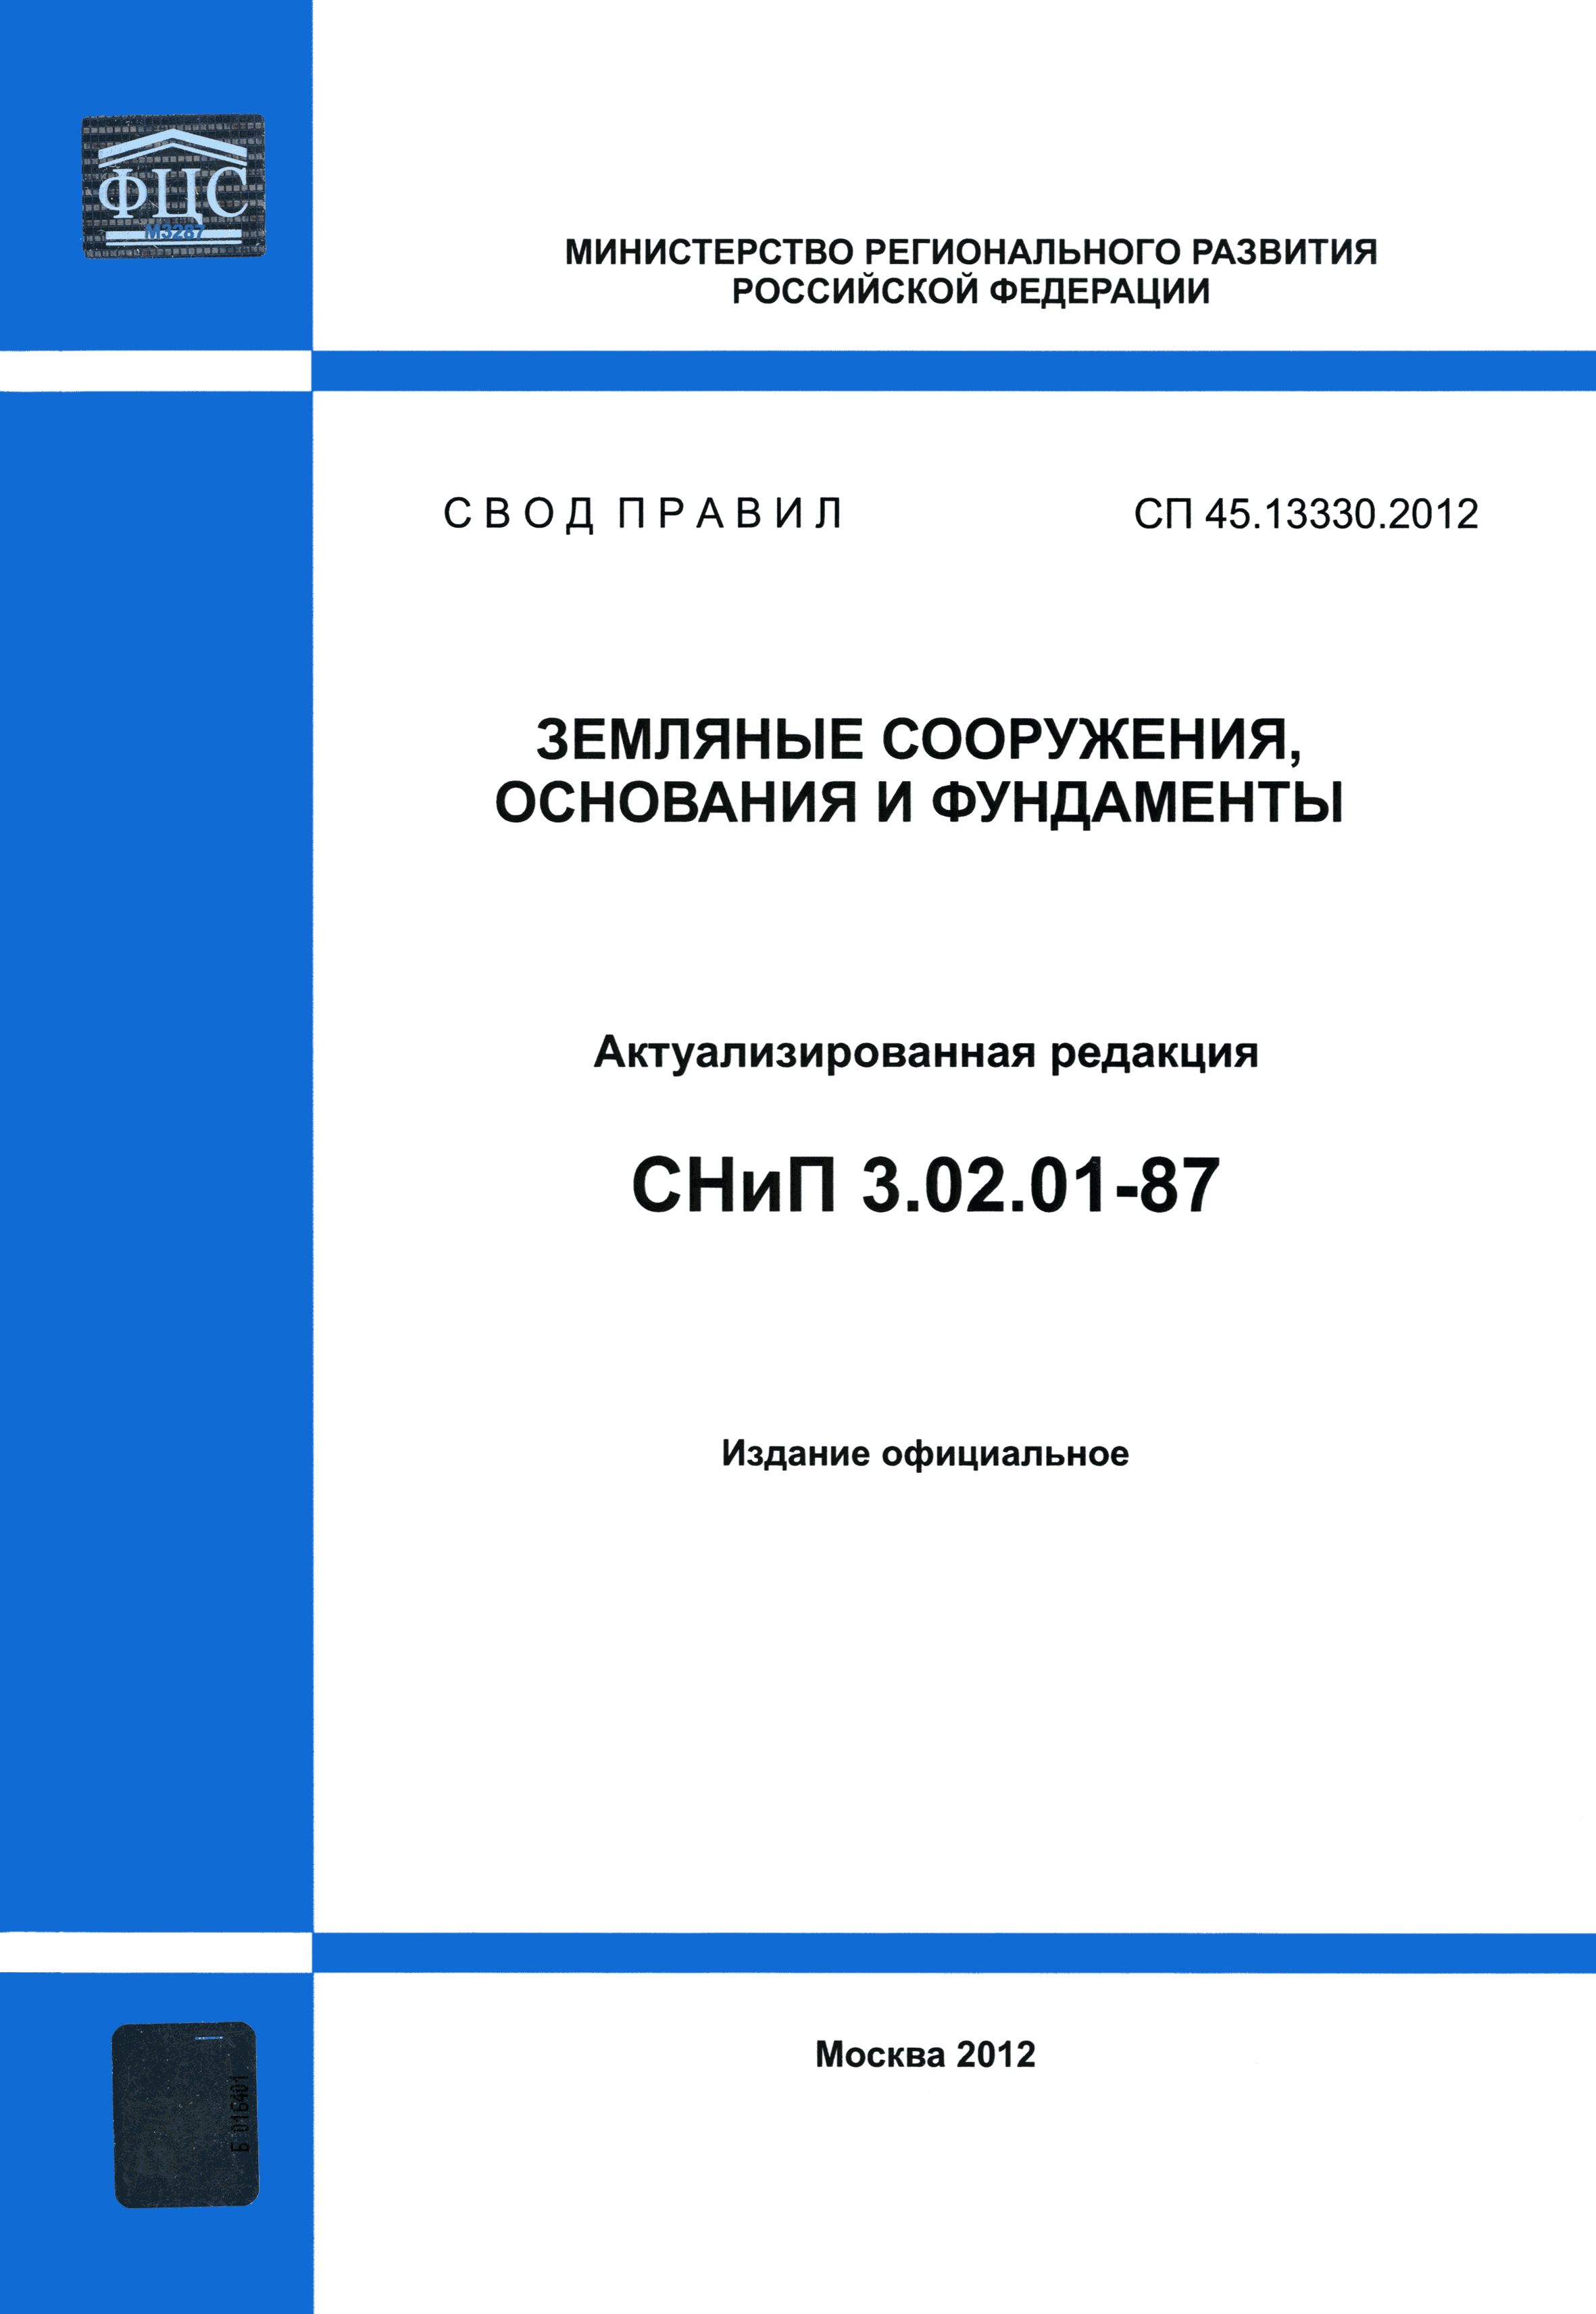 СП 45.13330.2012